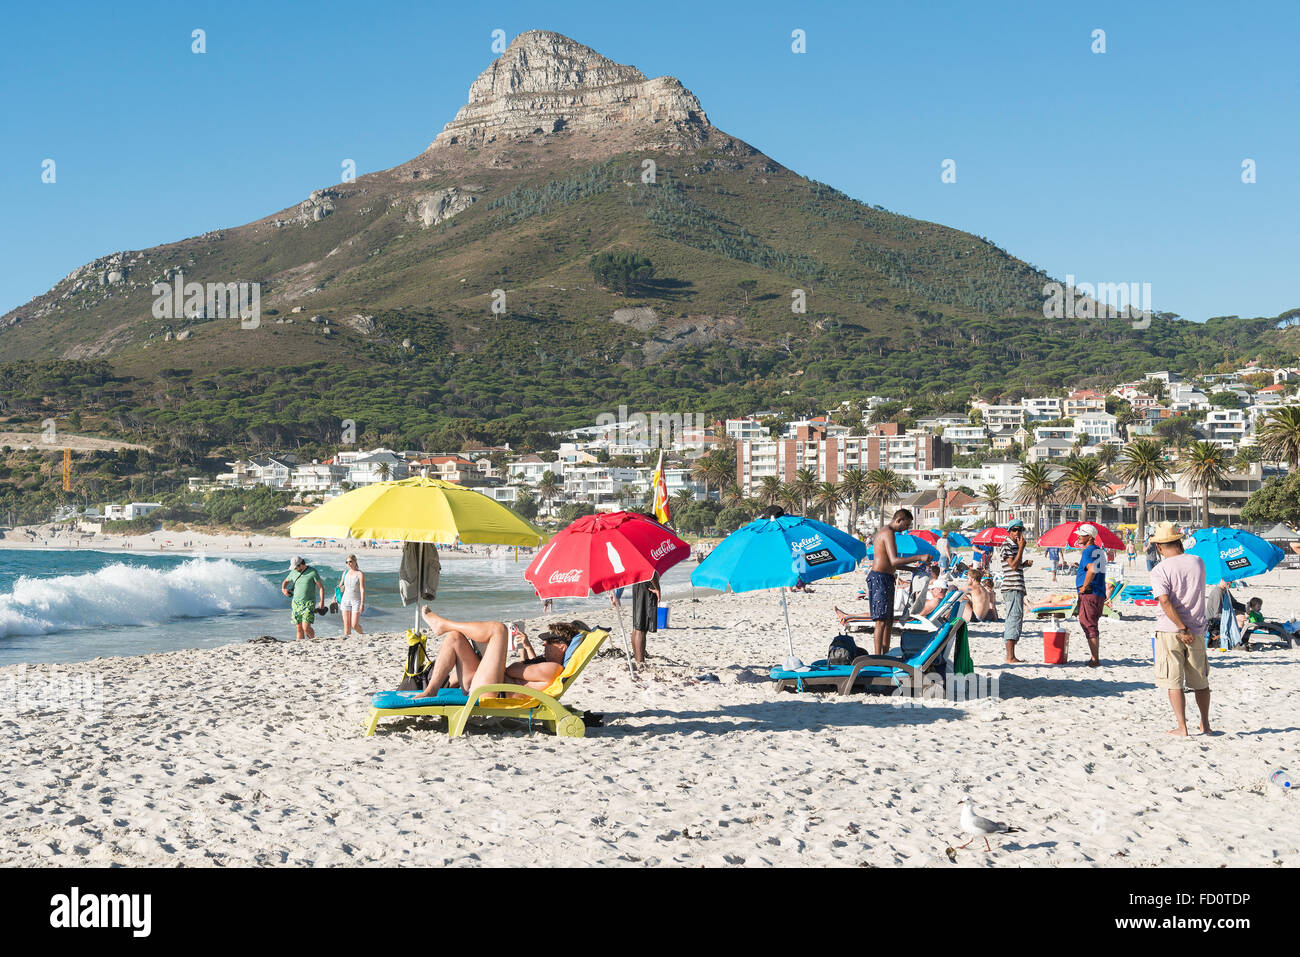 La plage de Camps Bay, Camps Bay, Cape Town, ville du Cap municipalité, province de Western Cape, Afrique du Sud Banque D'Images